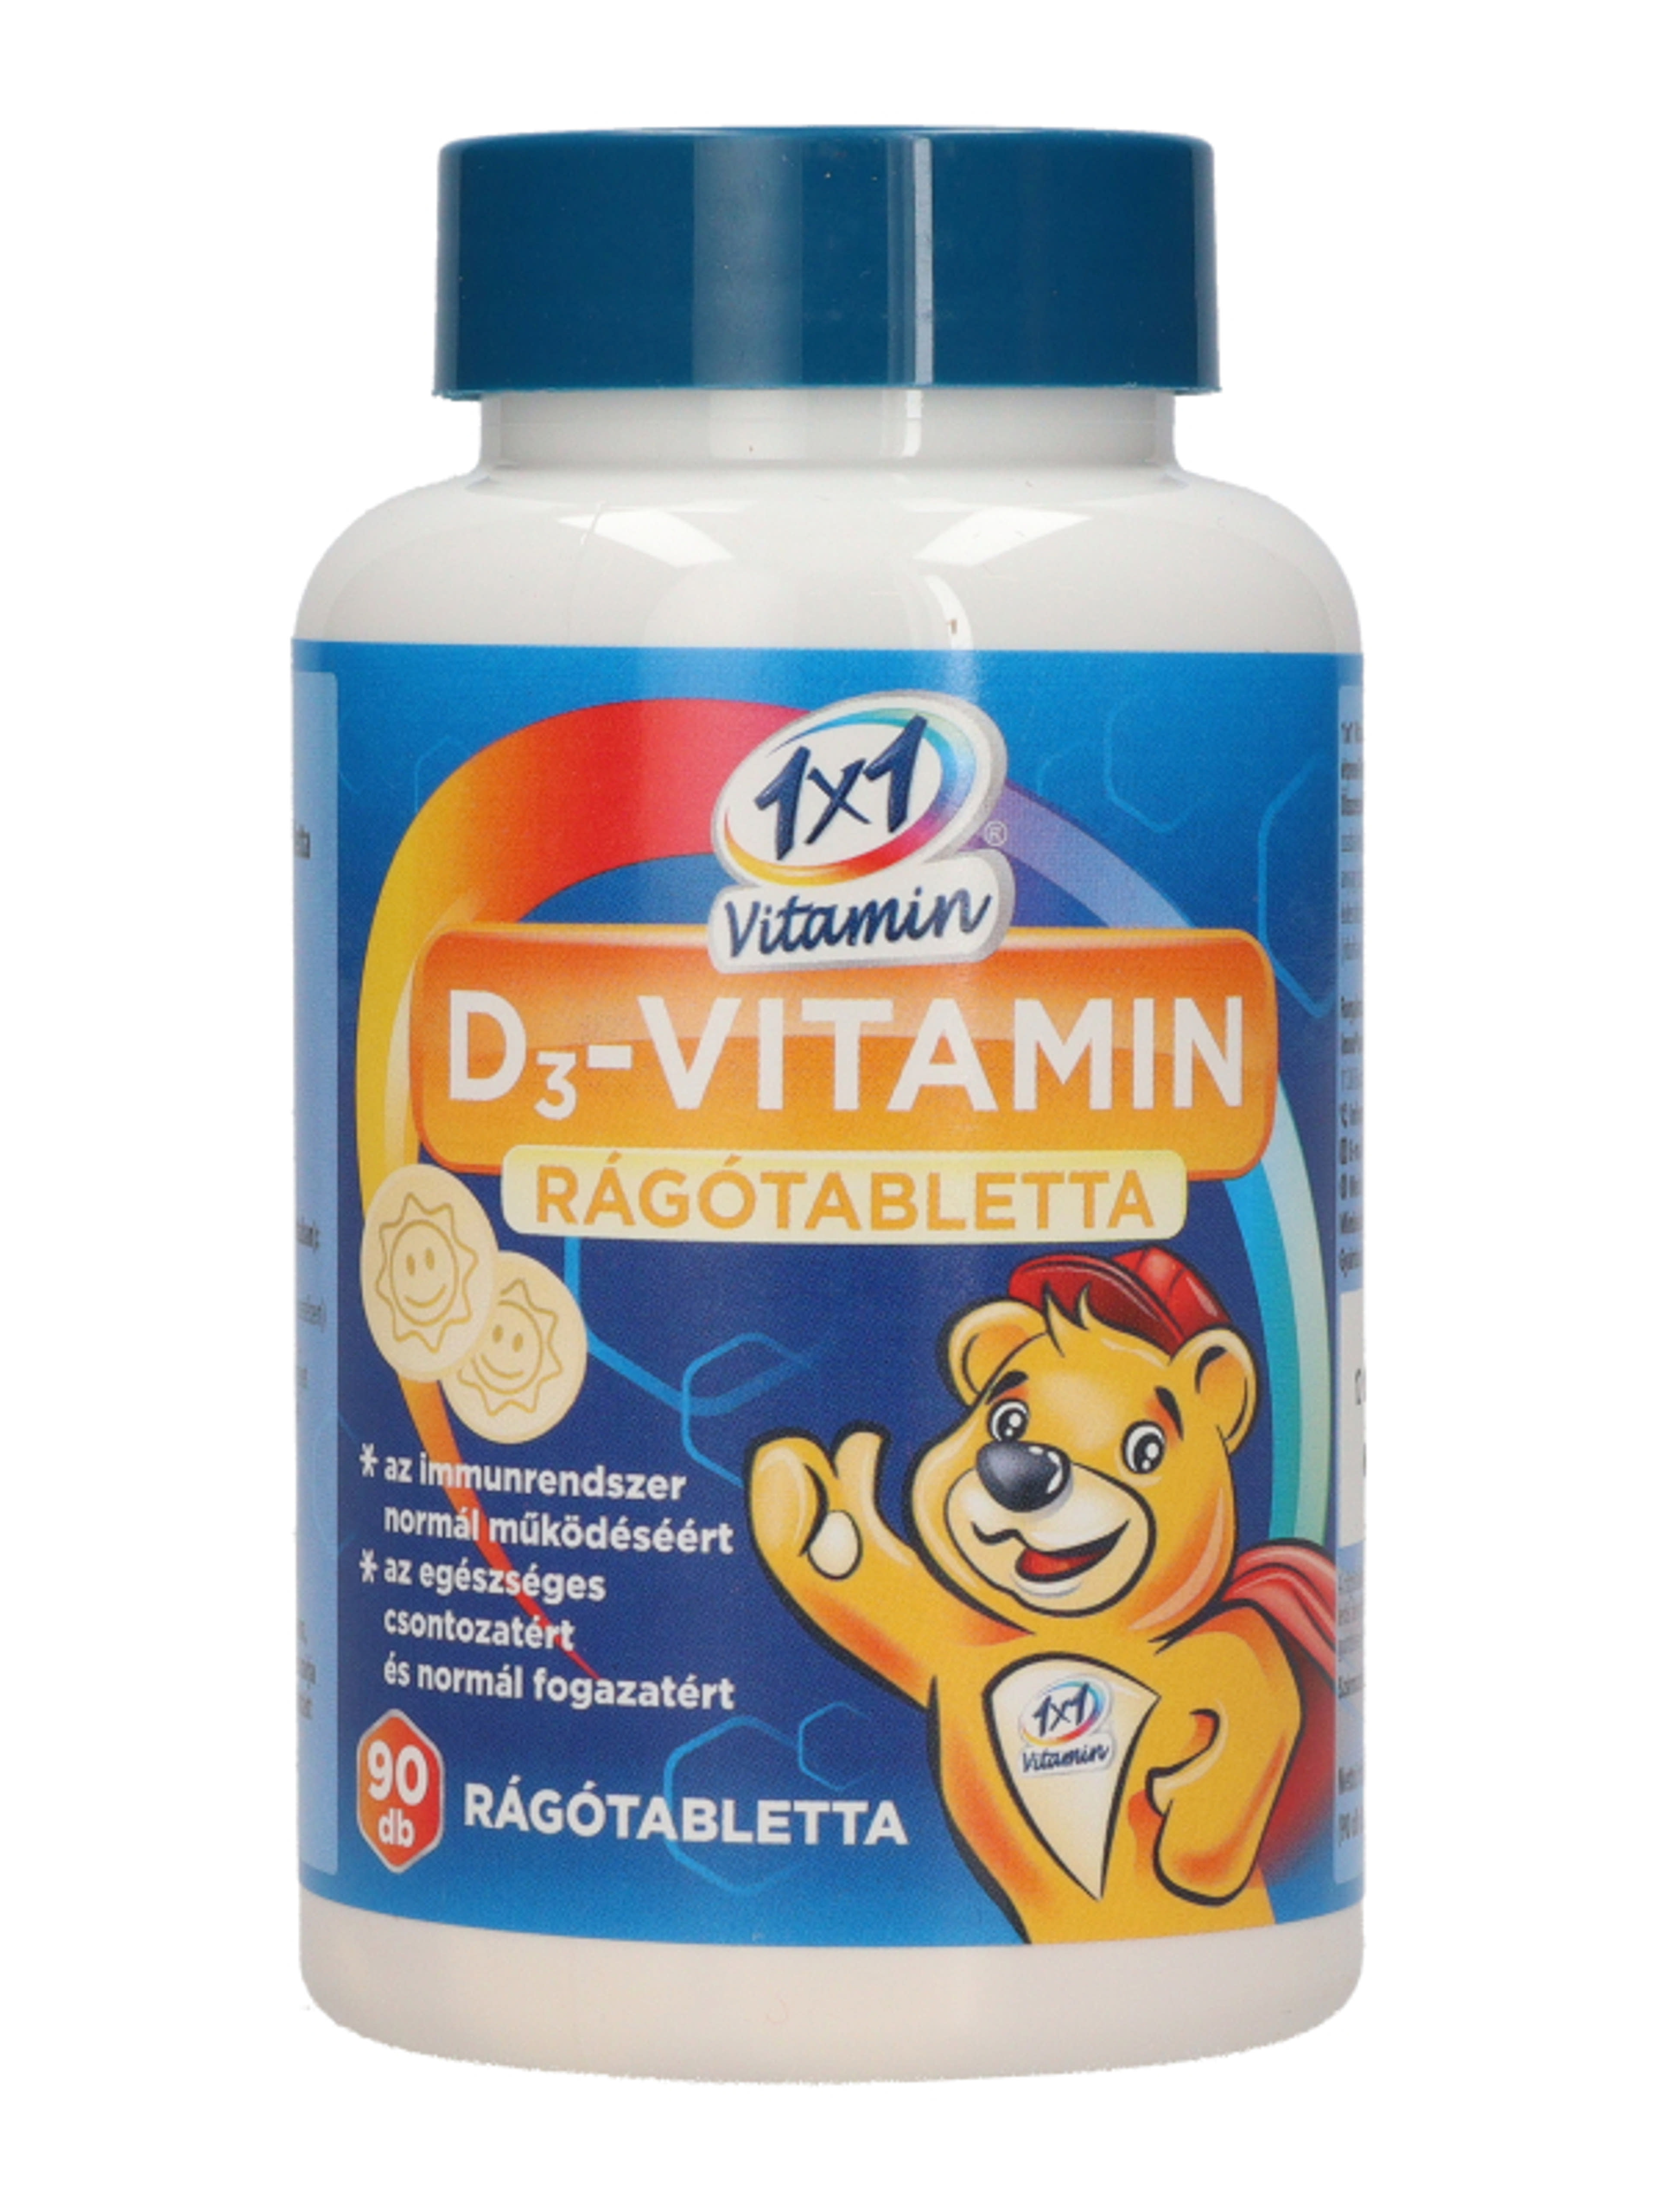 1x1 D3-vitamin rágótabletta napocskás - 90 db-1